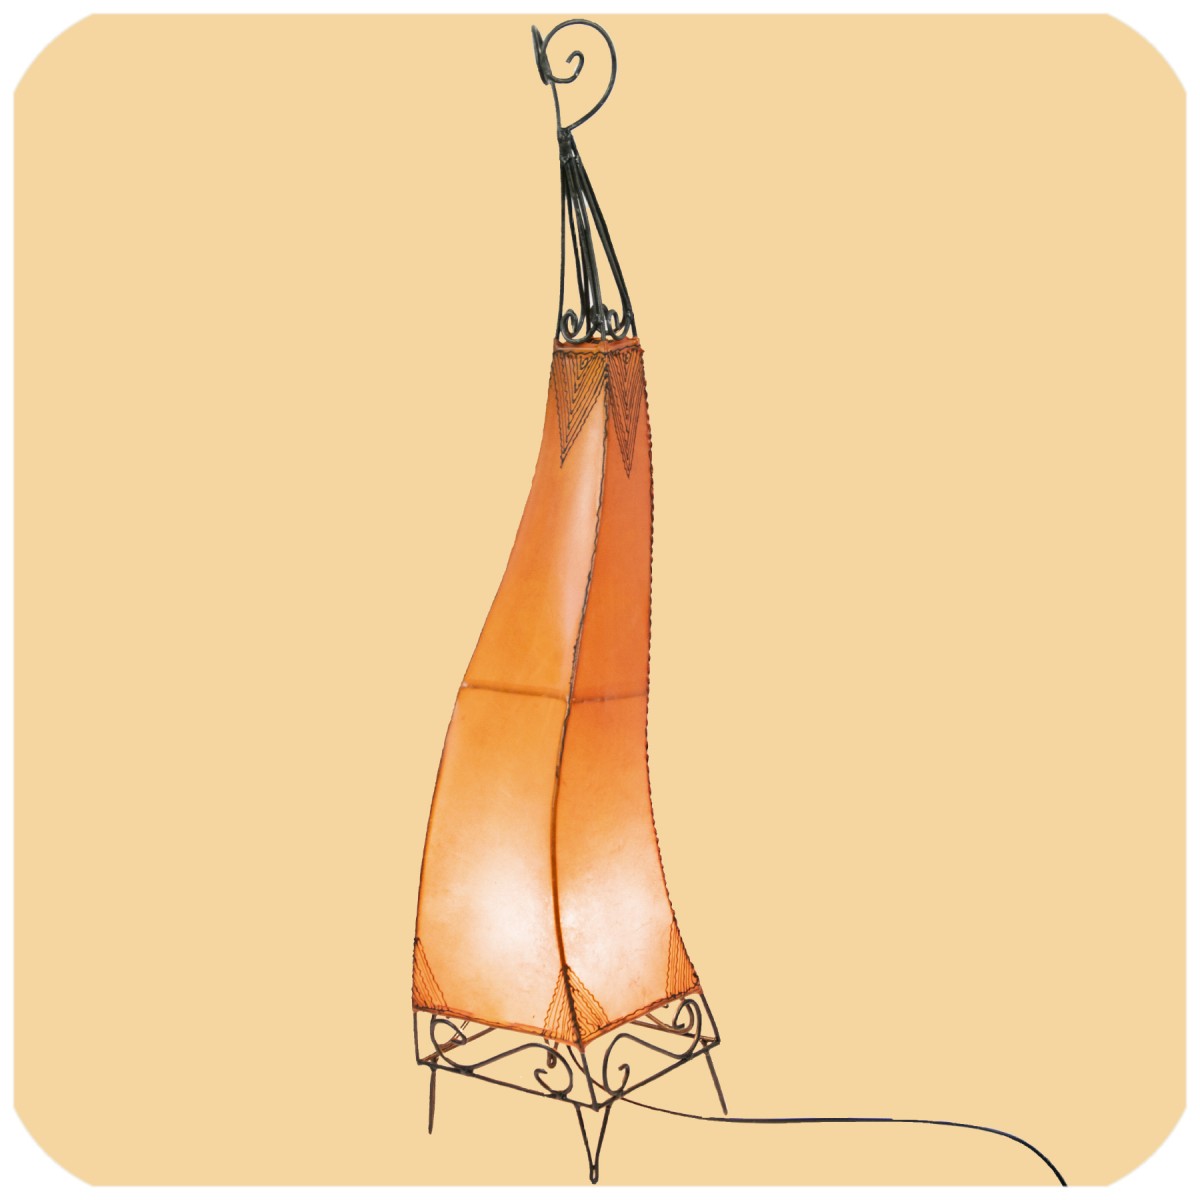 Orientalische Lampe Hennalampe marokkanische Lederlampe Tischleuchte Stehleuchte El Bahia Orient 100 cm